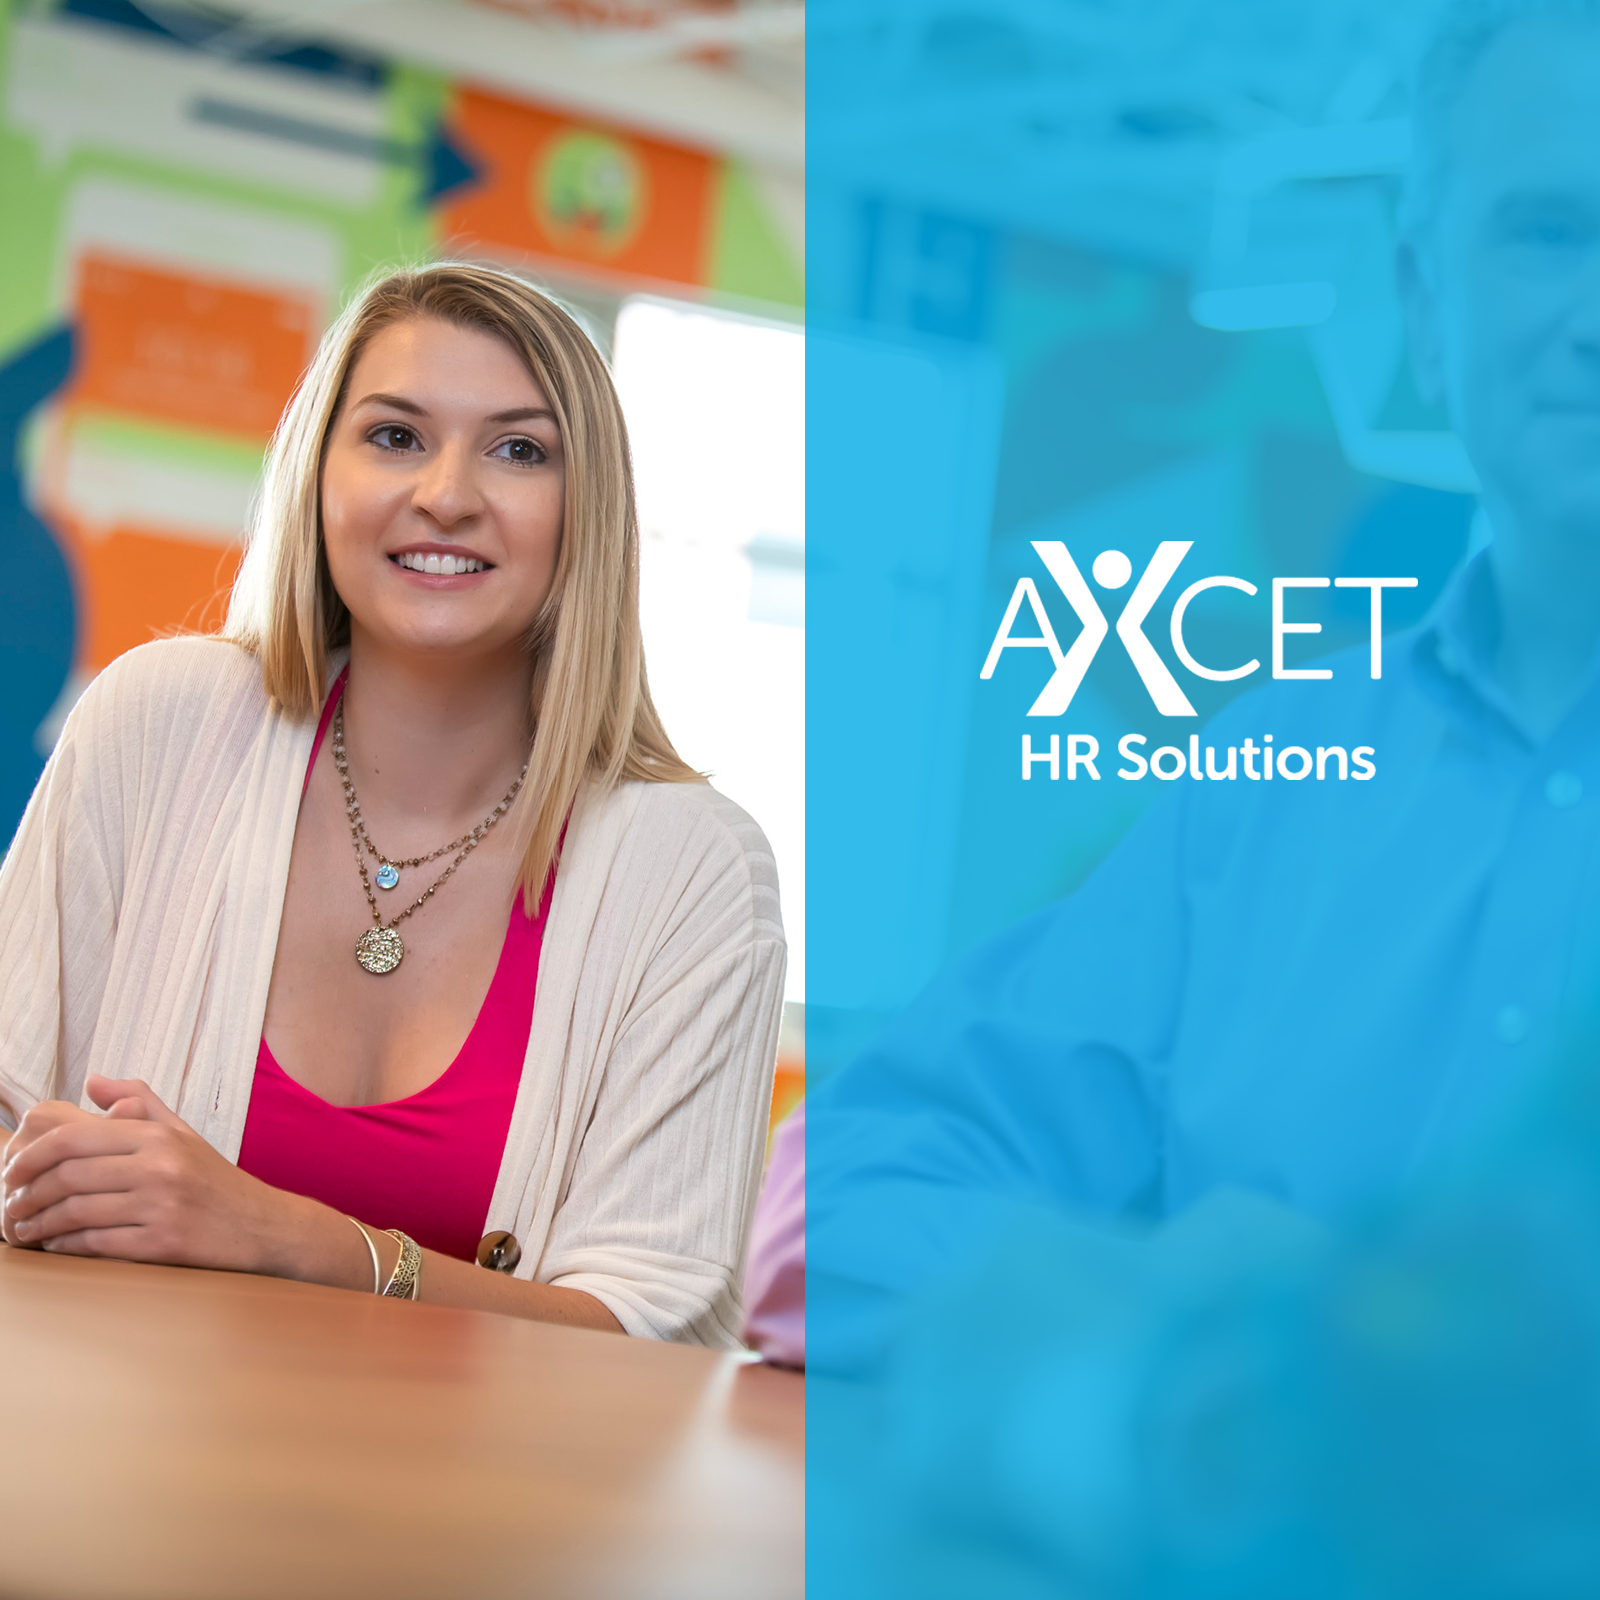 Axcet HR Solutions - vendor materials